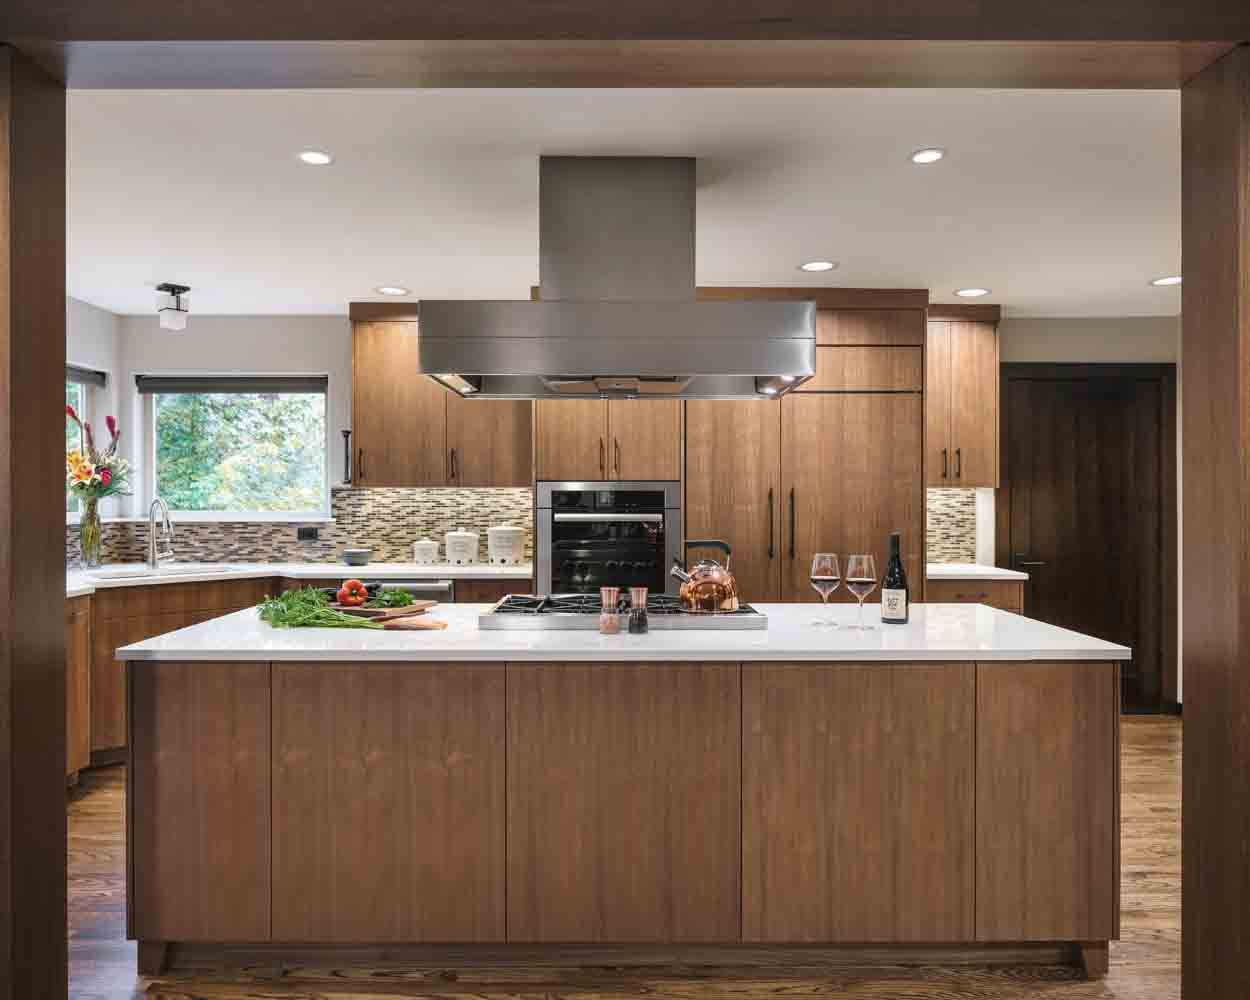 hardwood kitchen cabinets in modern kitchen